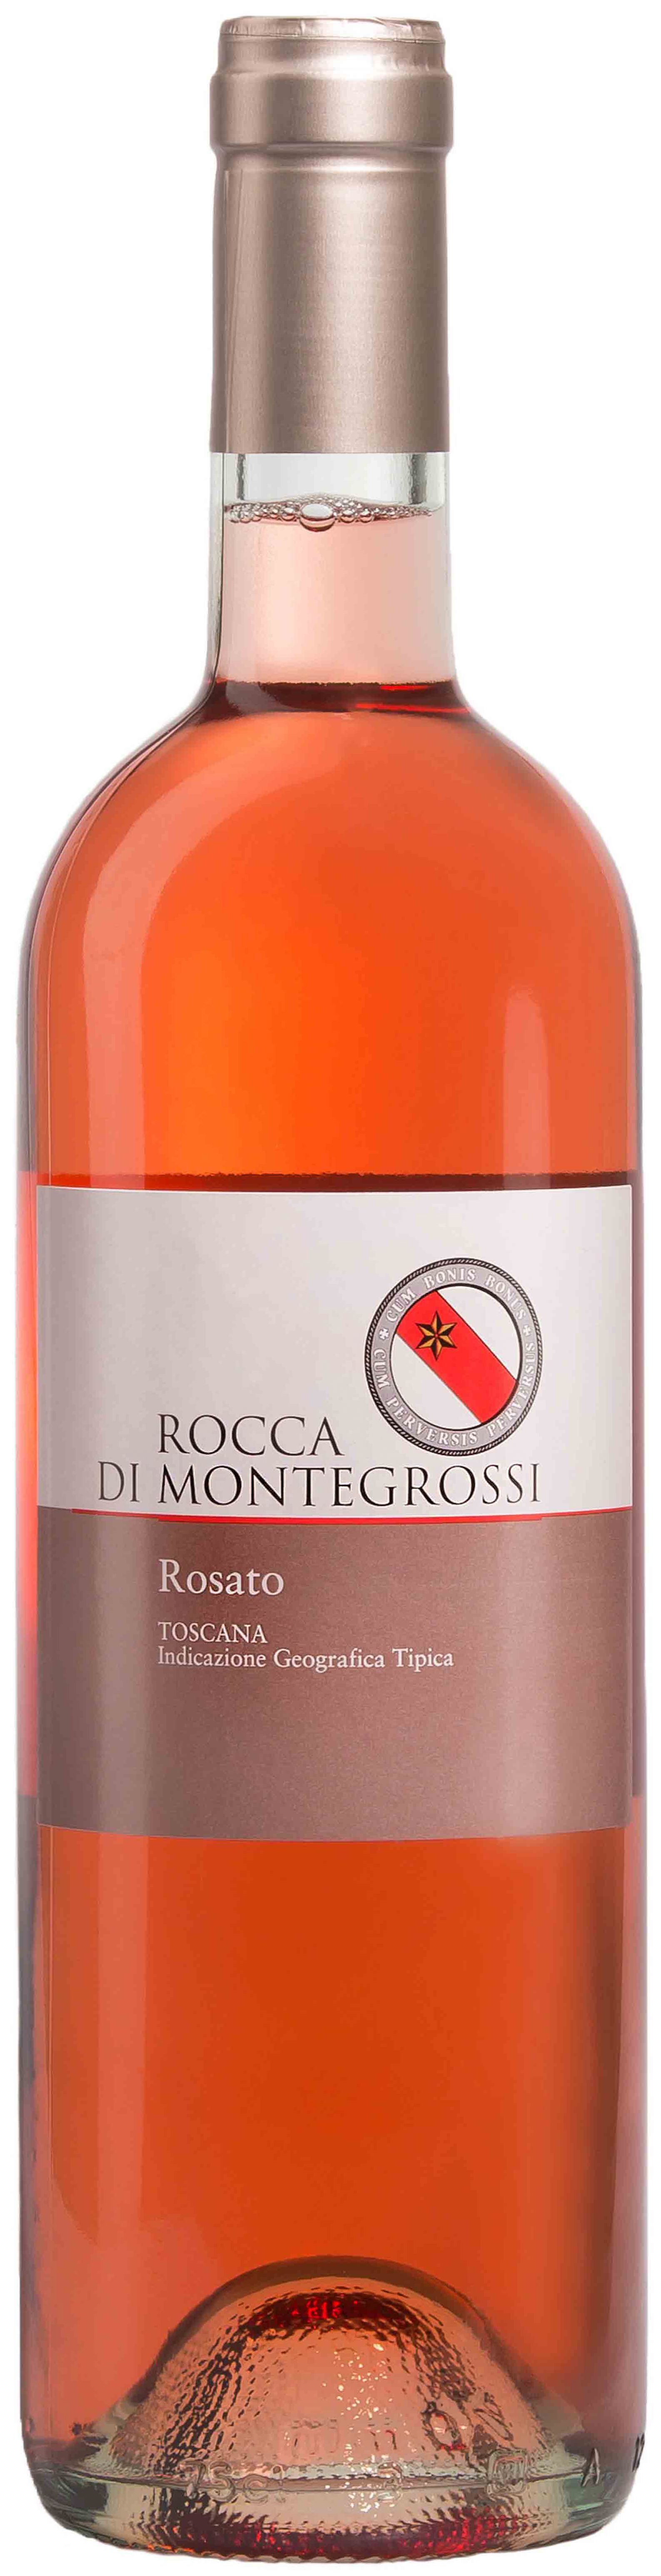 Rocca Di Montegrossi, Rosato, 2013